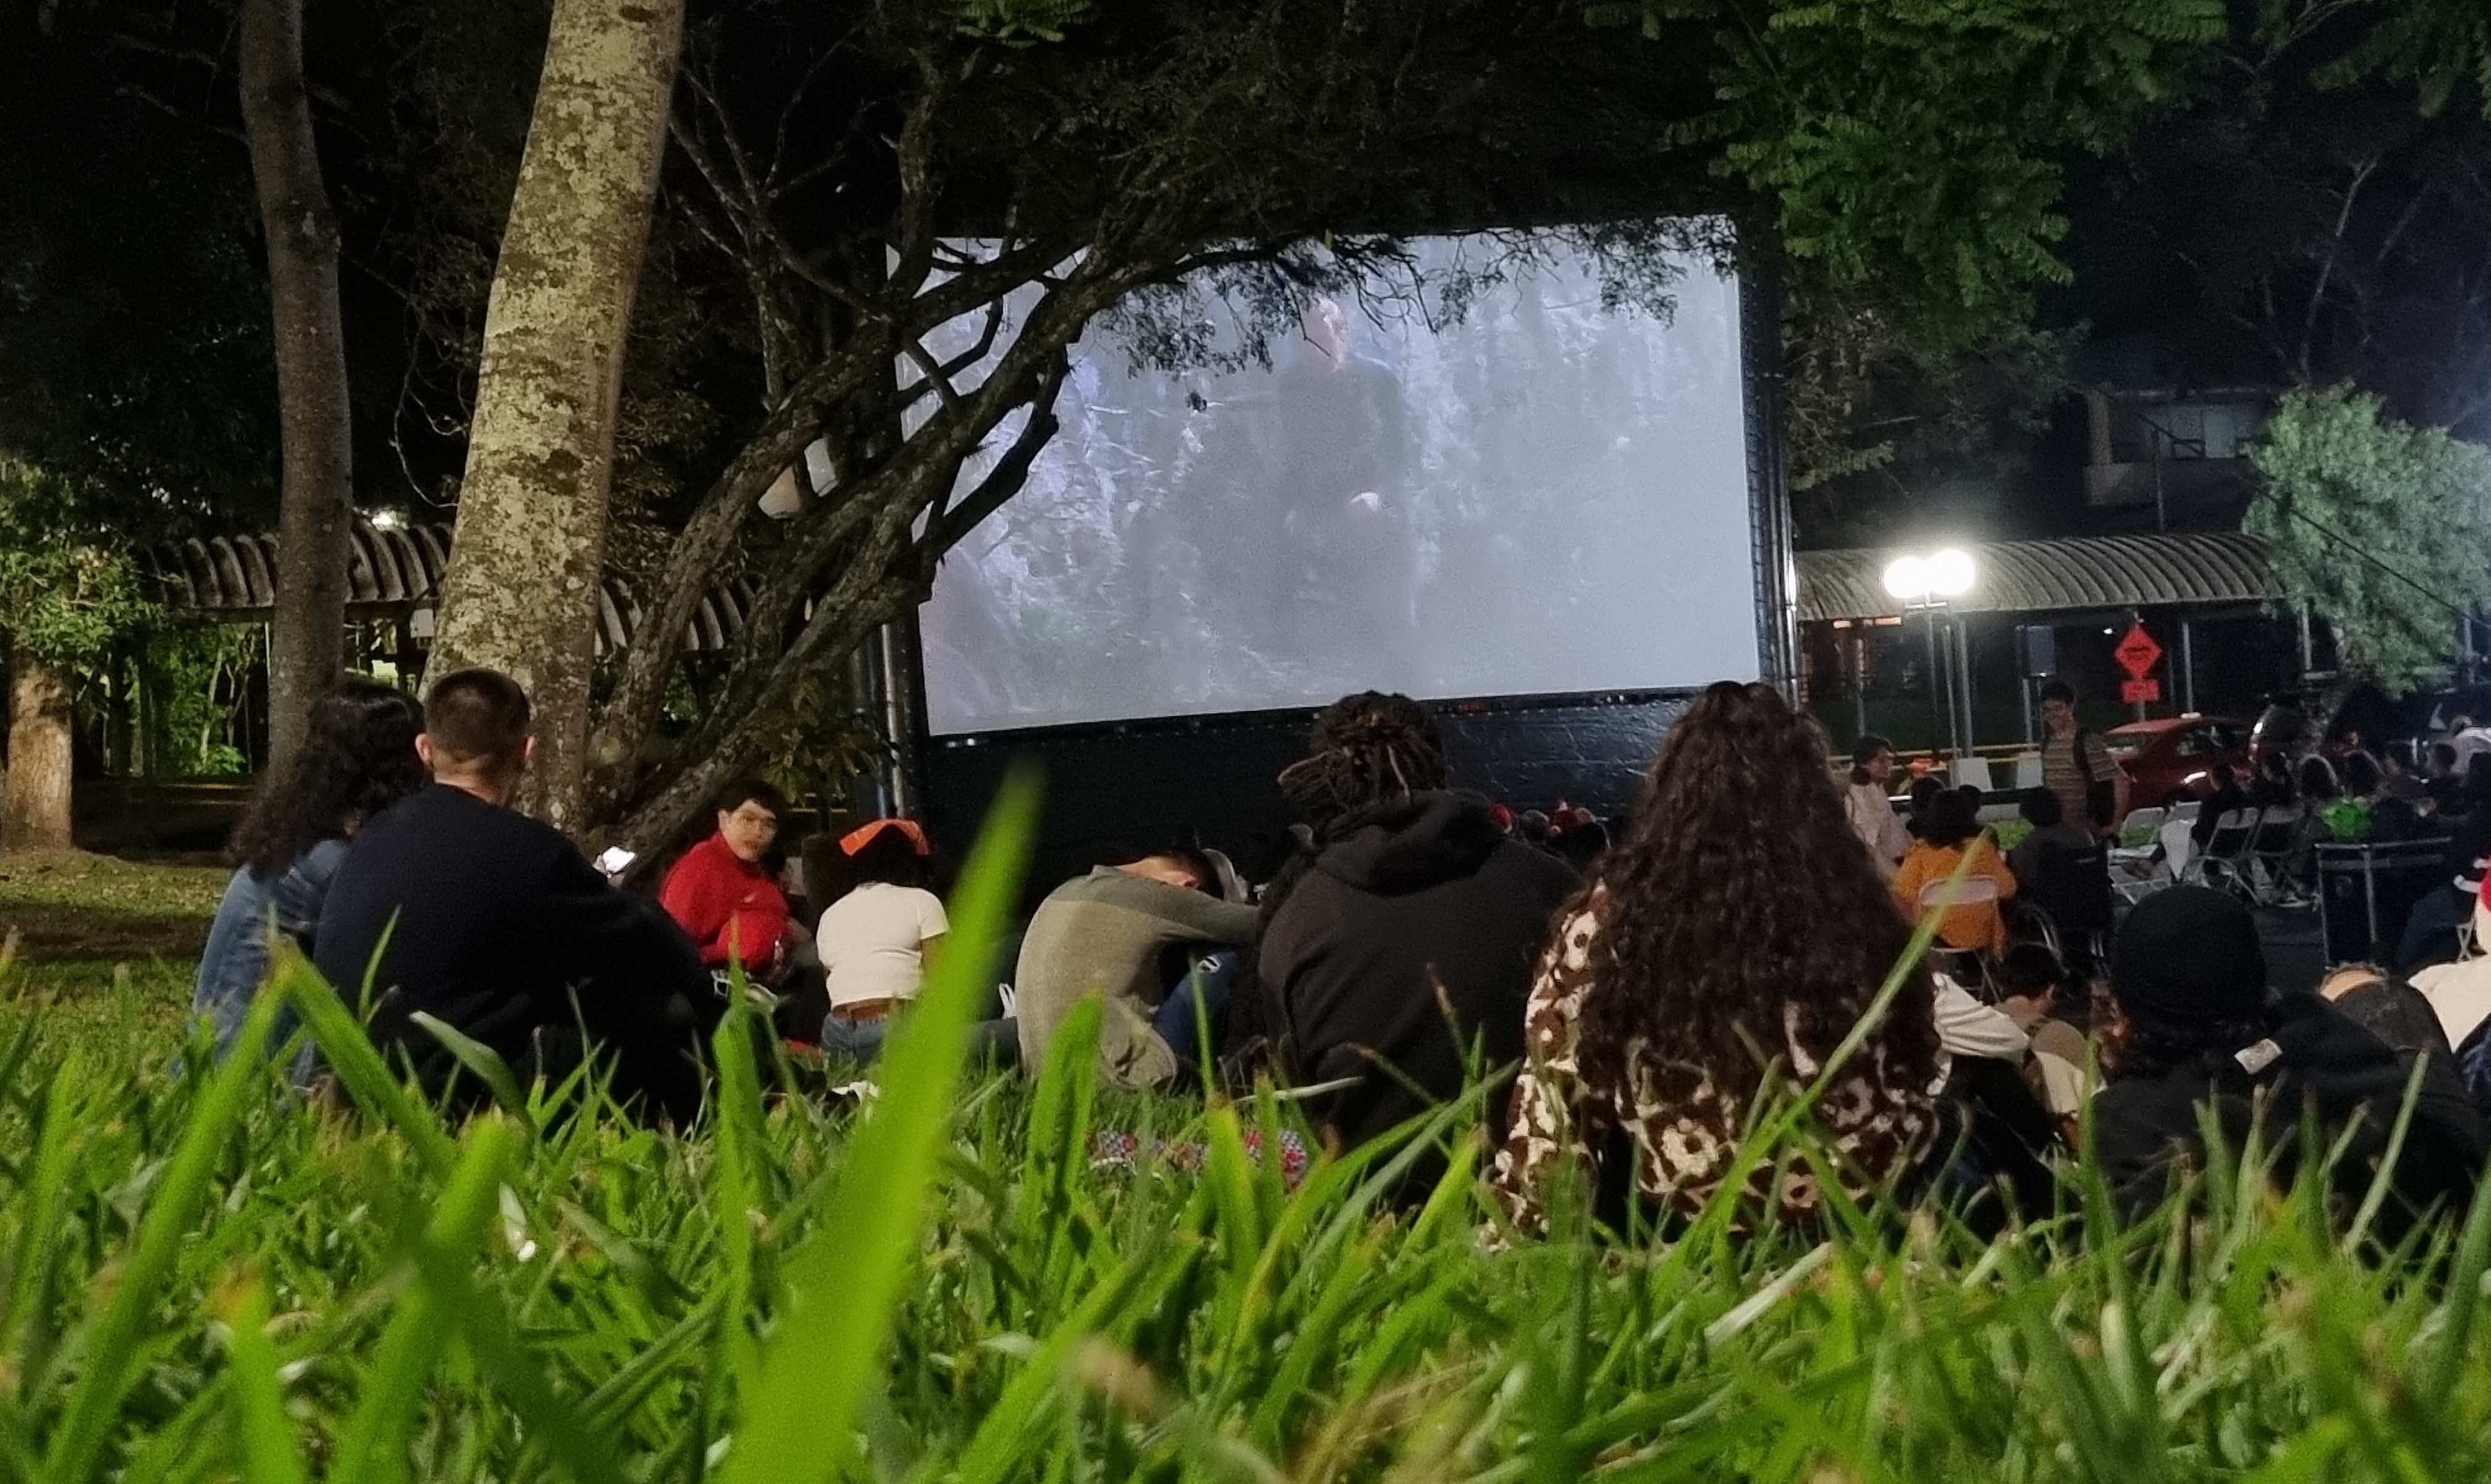 Foto de una de la funciones del cine al aire libre, donde se aprecia a las personas sentadas en el pasto y asientos viendo la película proyectada en una pantalla inflable. 